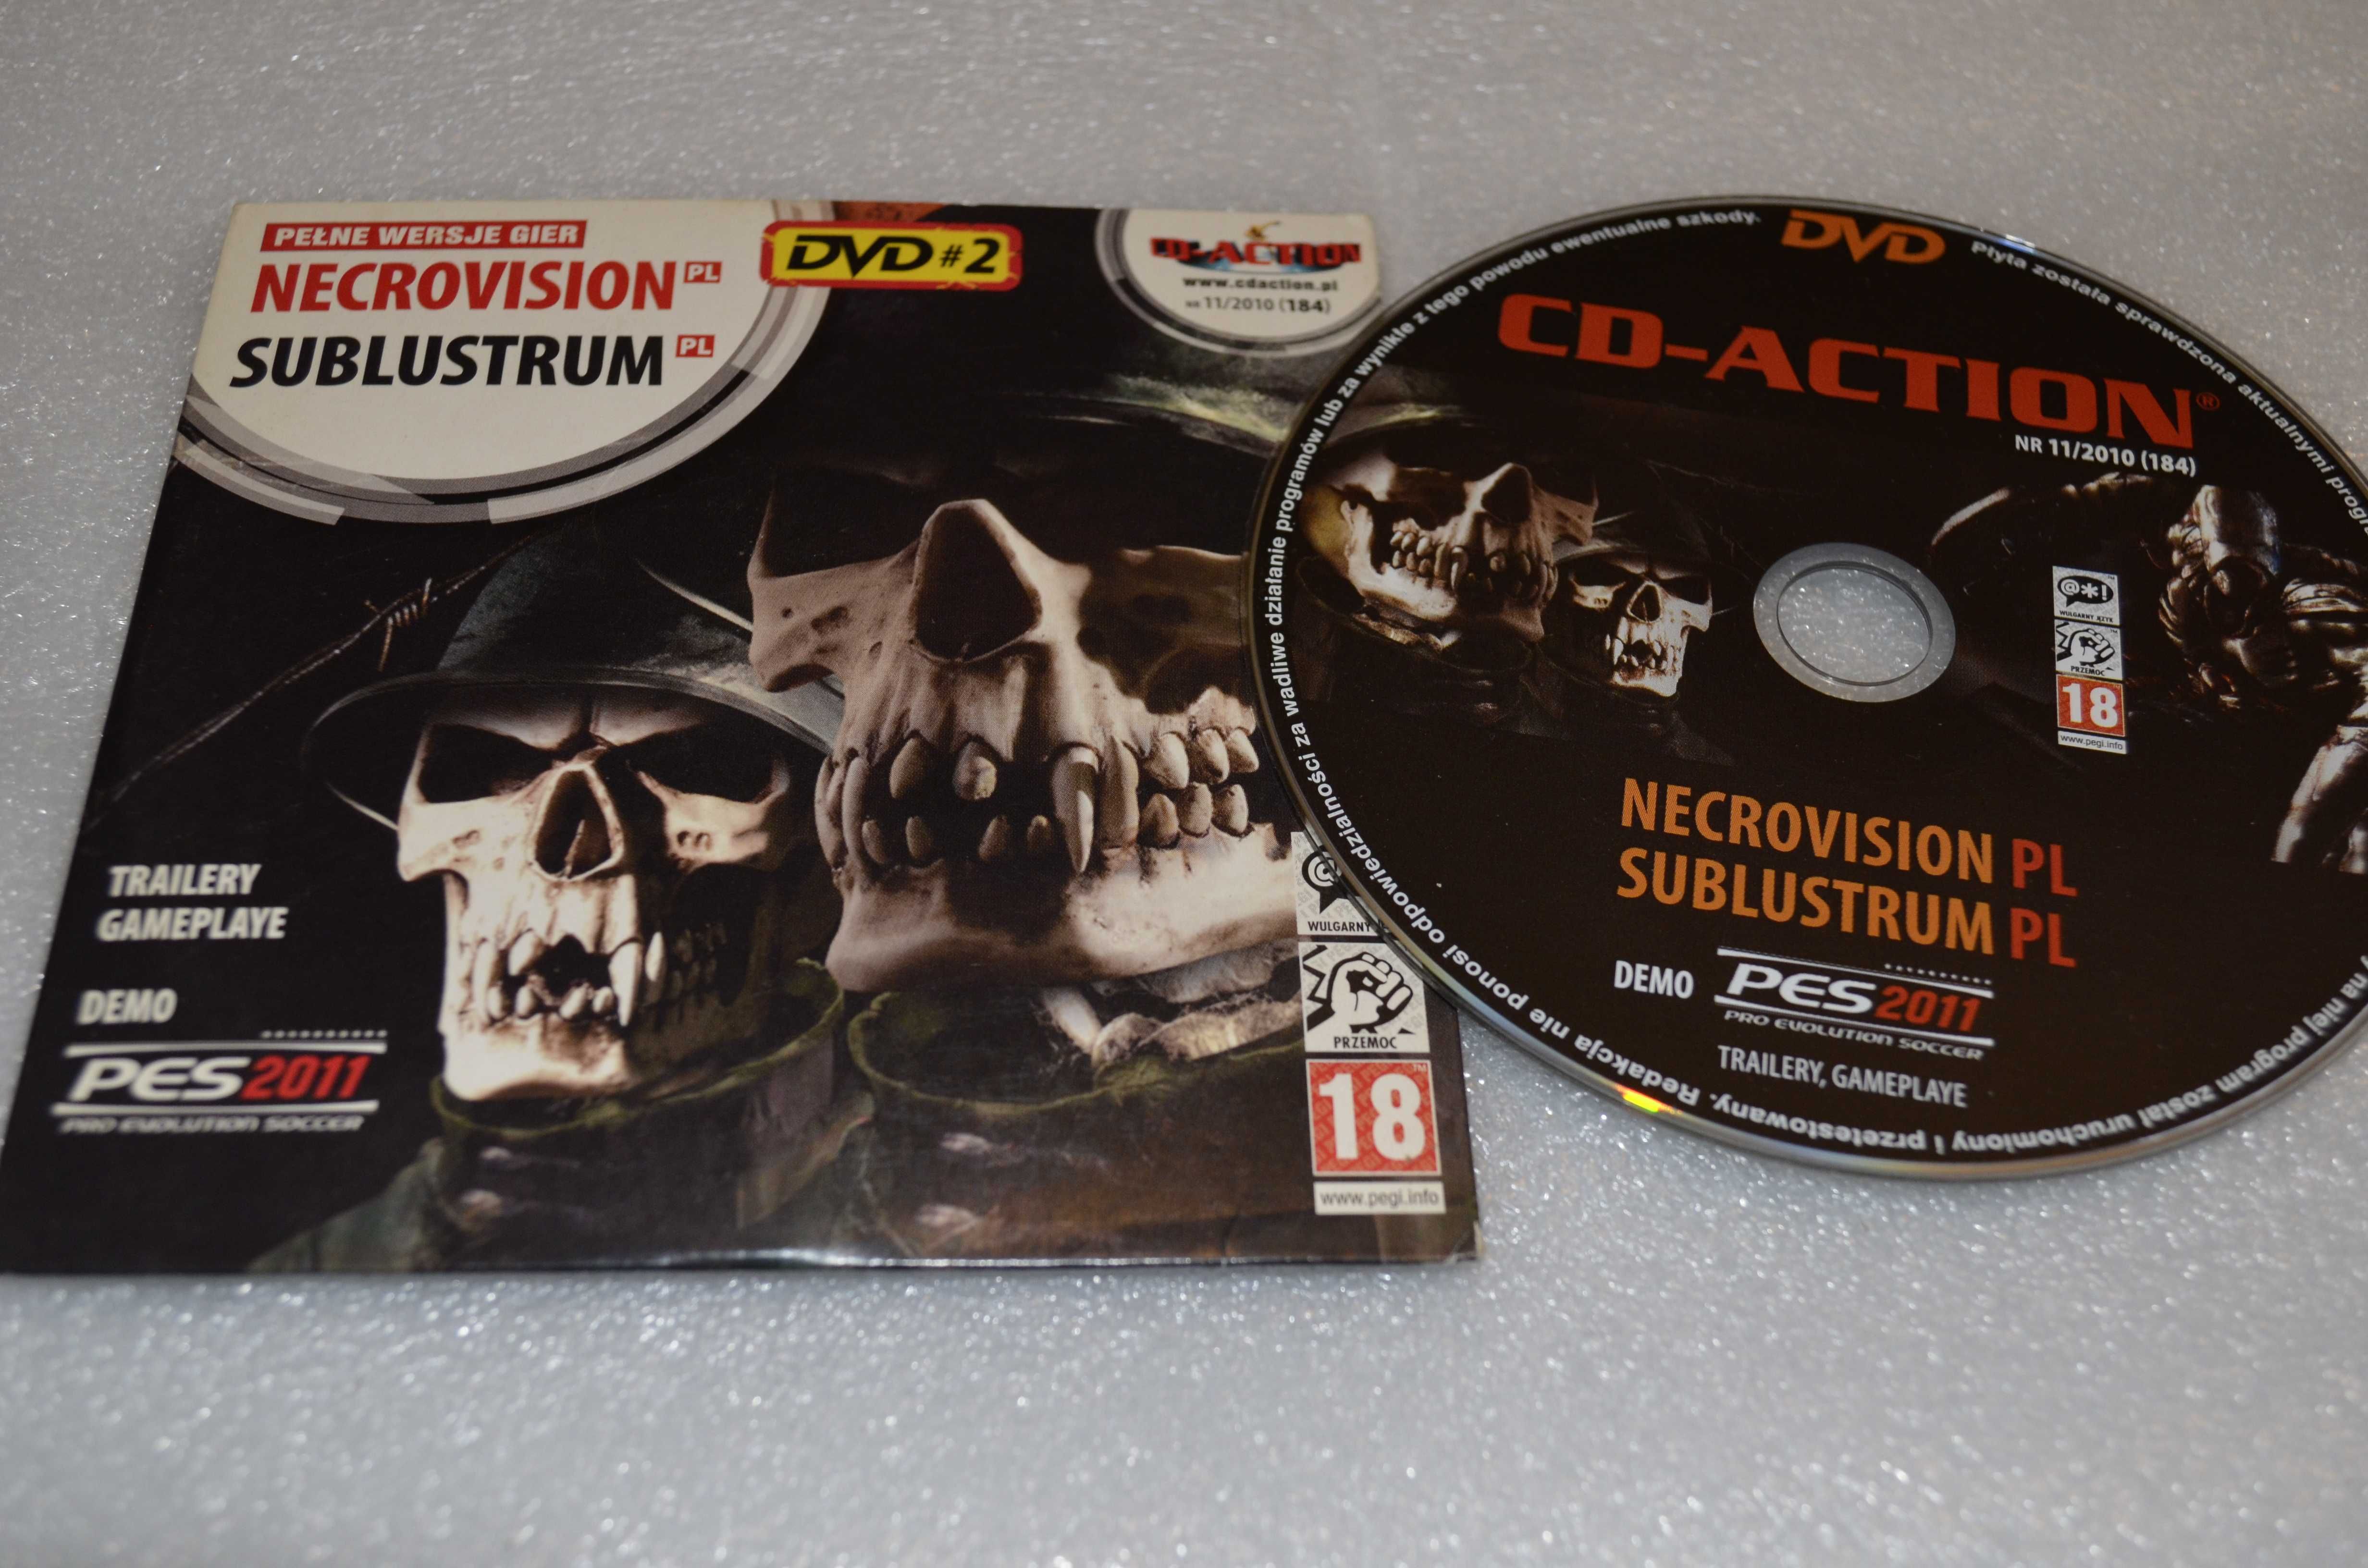 CD-ACTION 184 Necrovision + Sublustrum